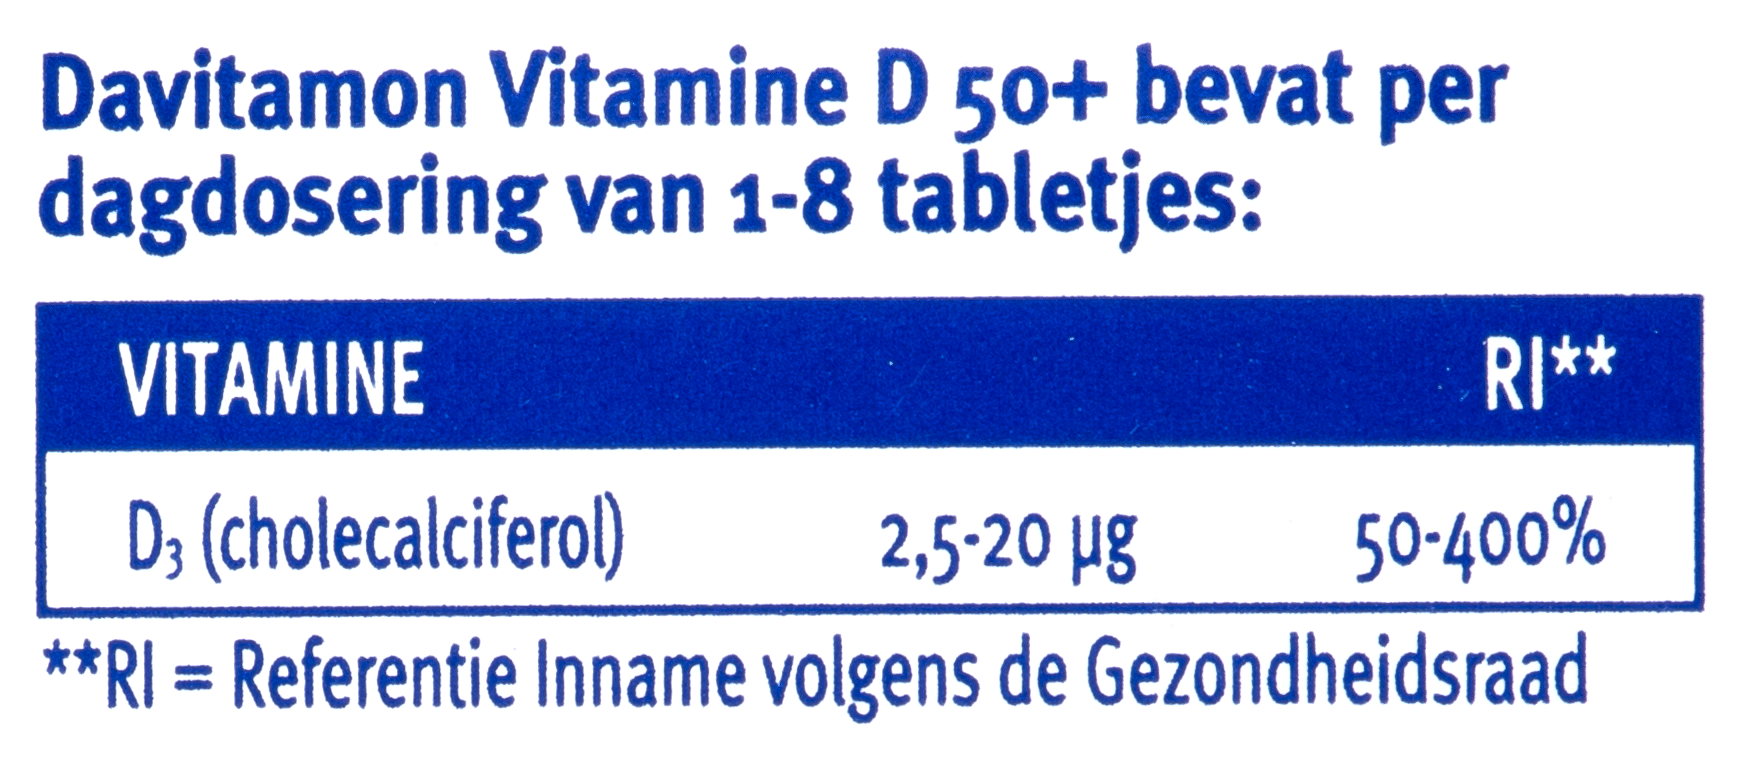 Davitamon Vitamine D50+ - dagdosering tabletjes